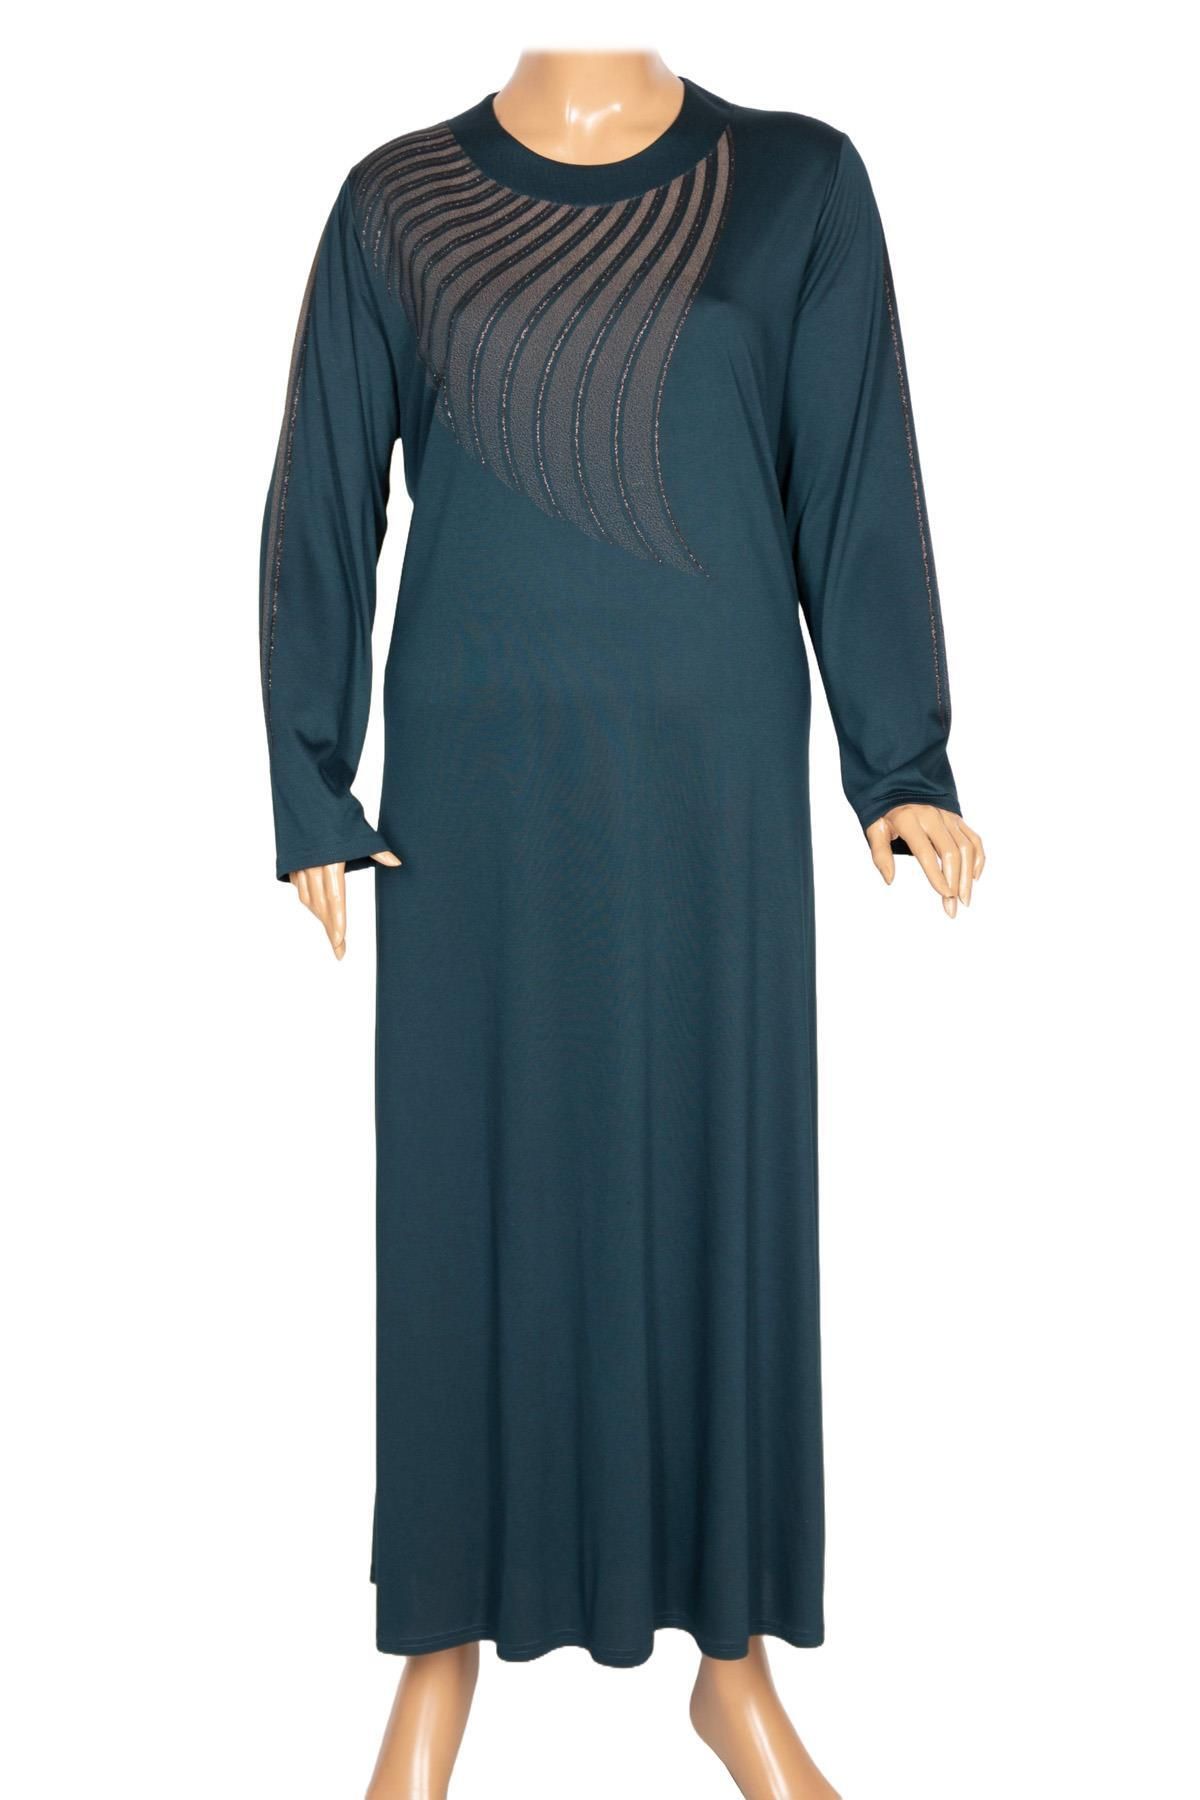 HESNA Kadın Belde Büyük Beden Boydan Baskılı Petrol Elbise